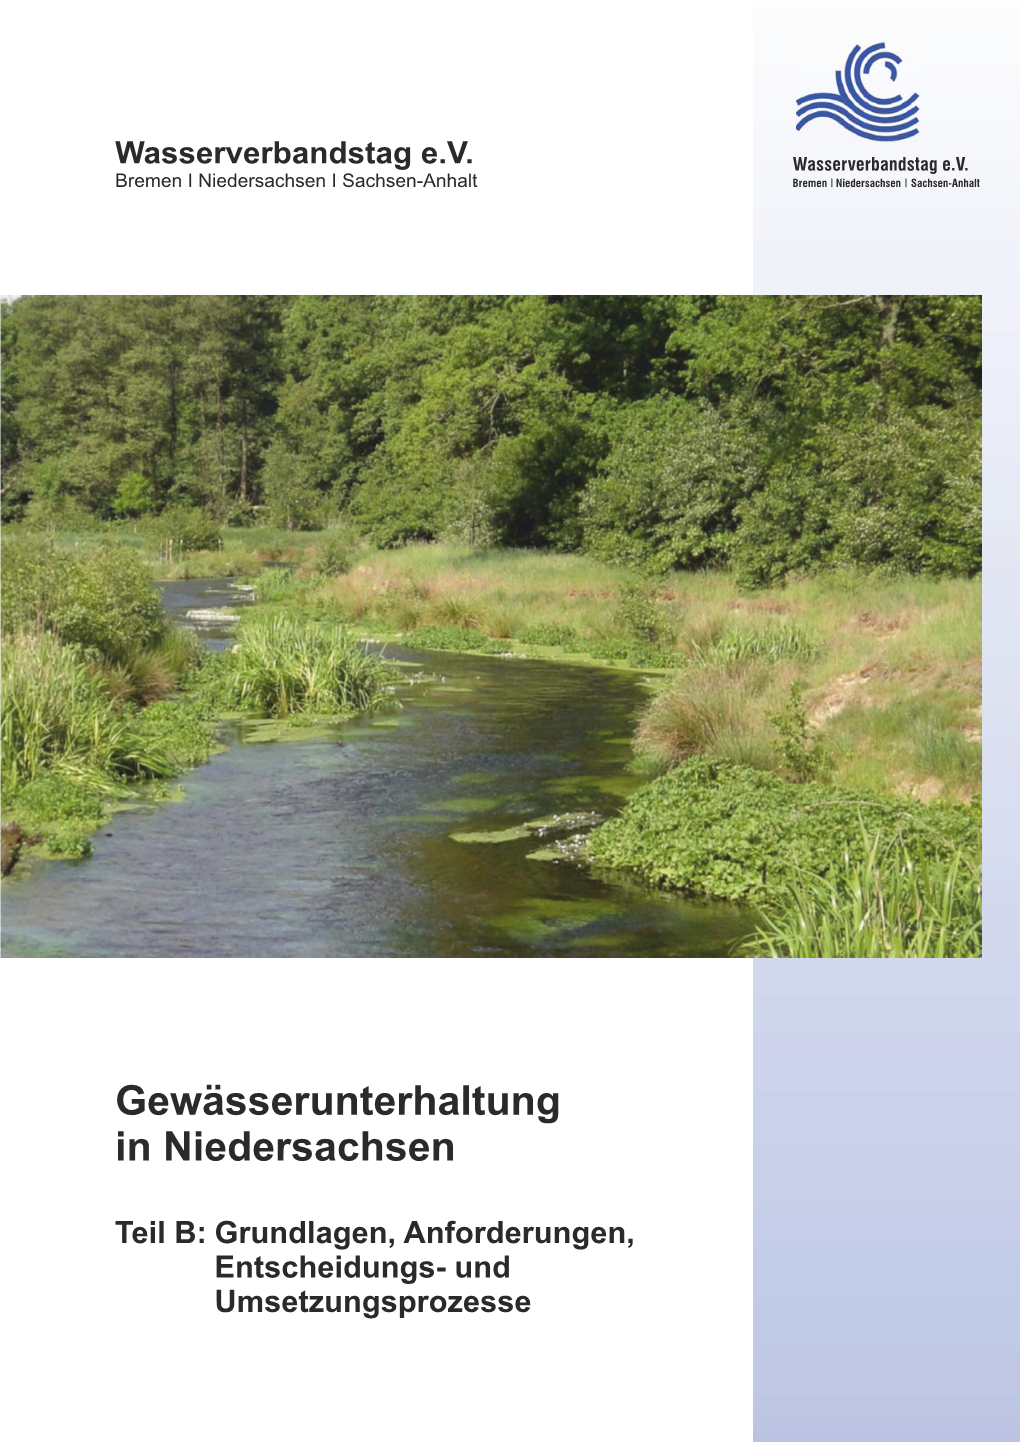 Gewässerunterhaltung in Niedersachsen